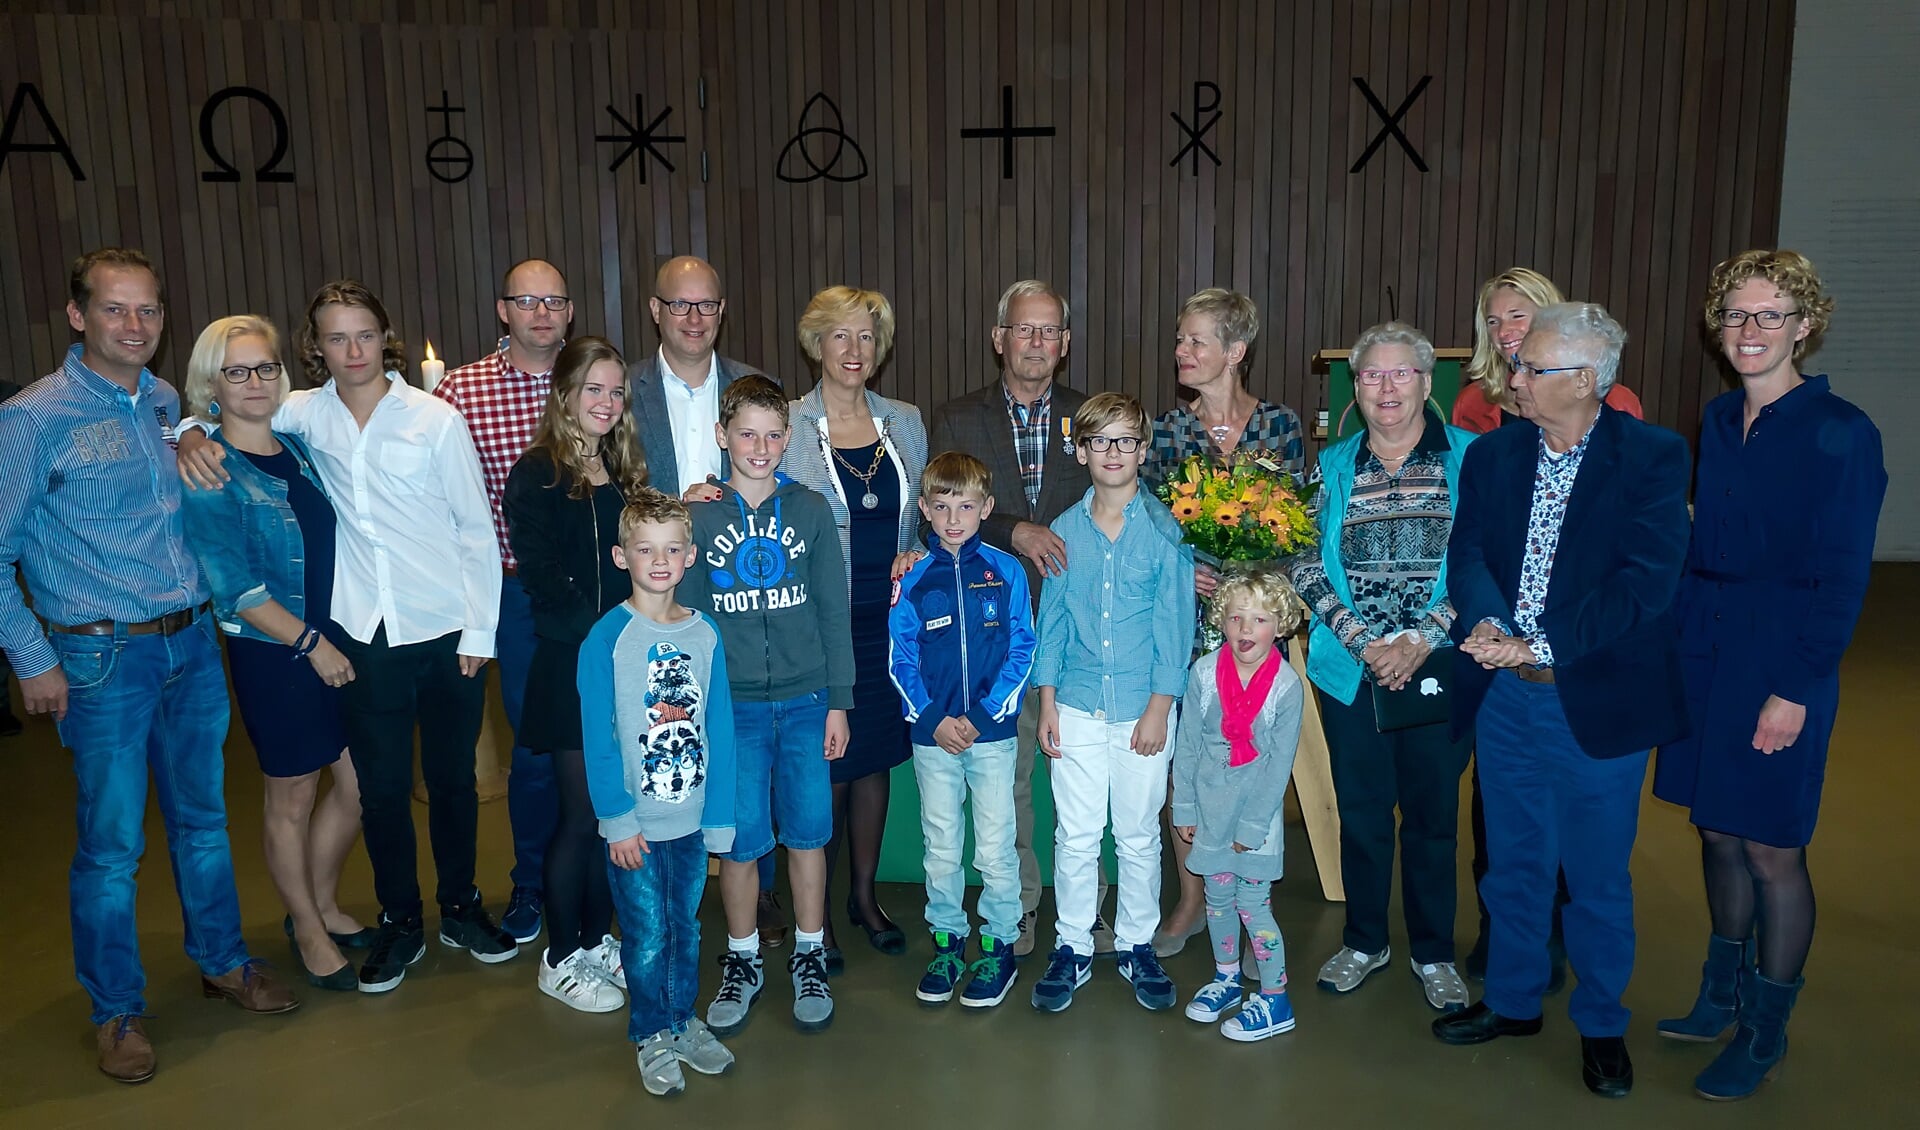 Joop Bakker staat tussen zijn echtgenote (met bloemen) en burgemeester Driessen en wordt omringd door zijn hele famlie. | Foto: J.P. Kranenburg